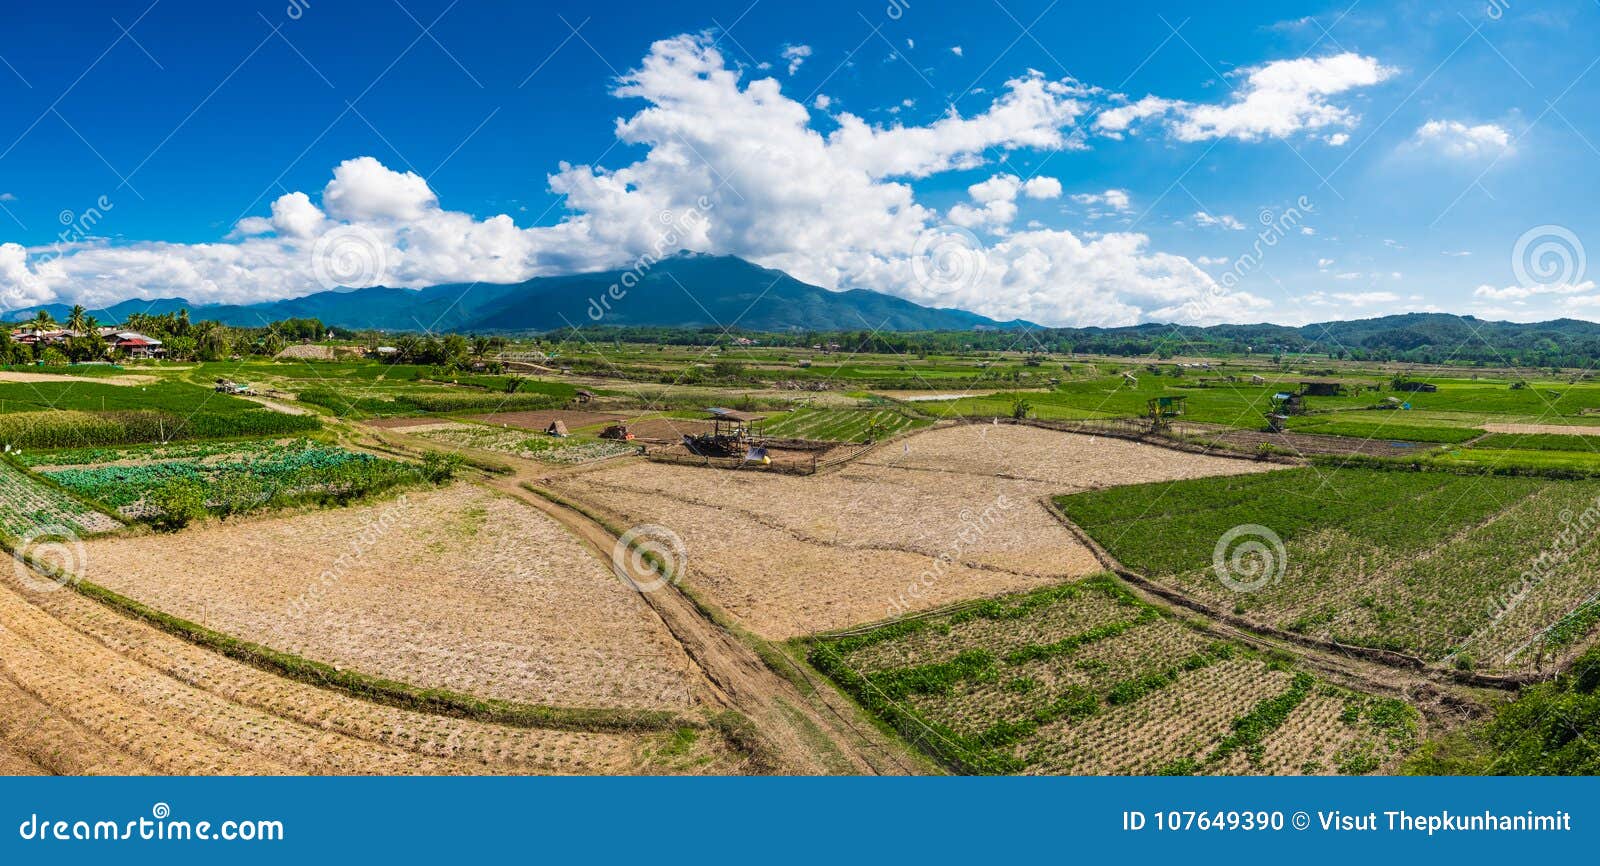 Ideia do panorama do campo do arroz no norte de Tailândia com montanha grande e fundo nebuloso do céu azul, foco seletivo